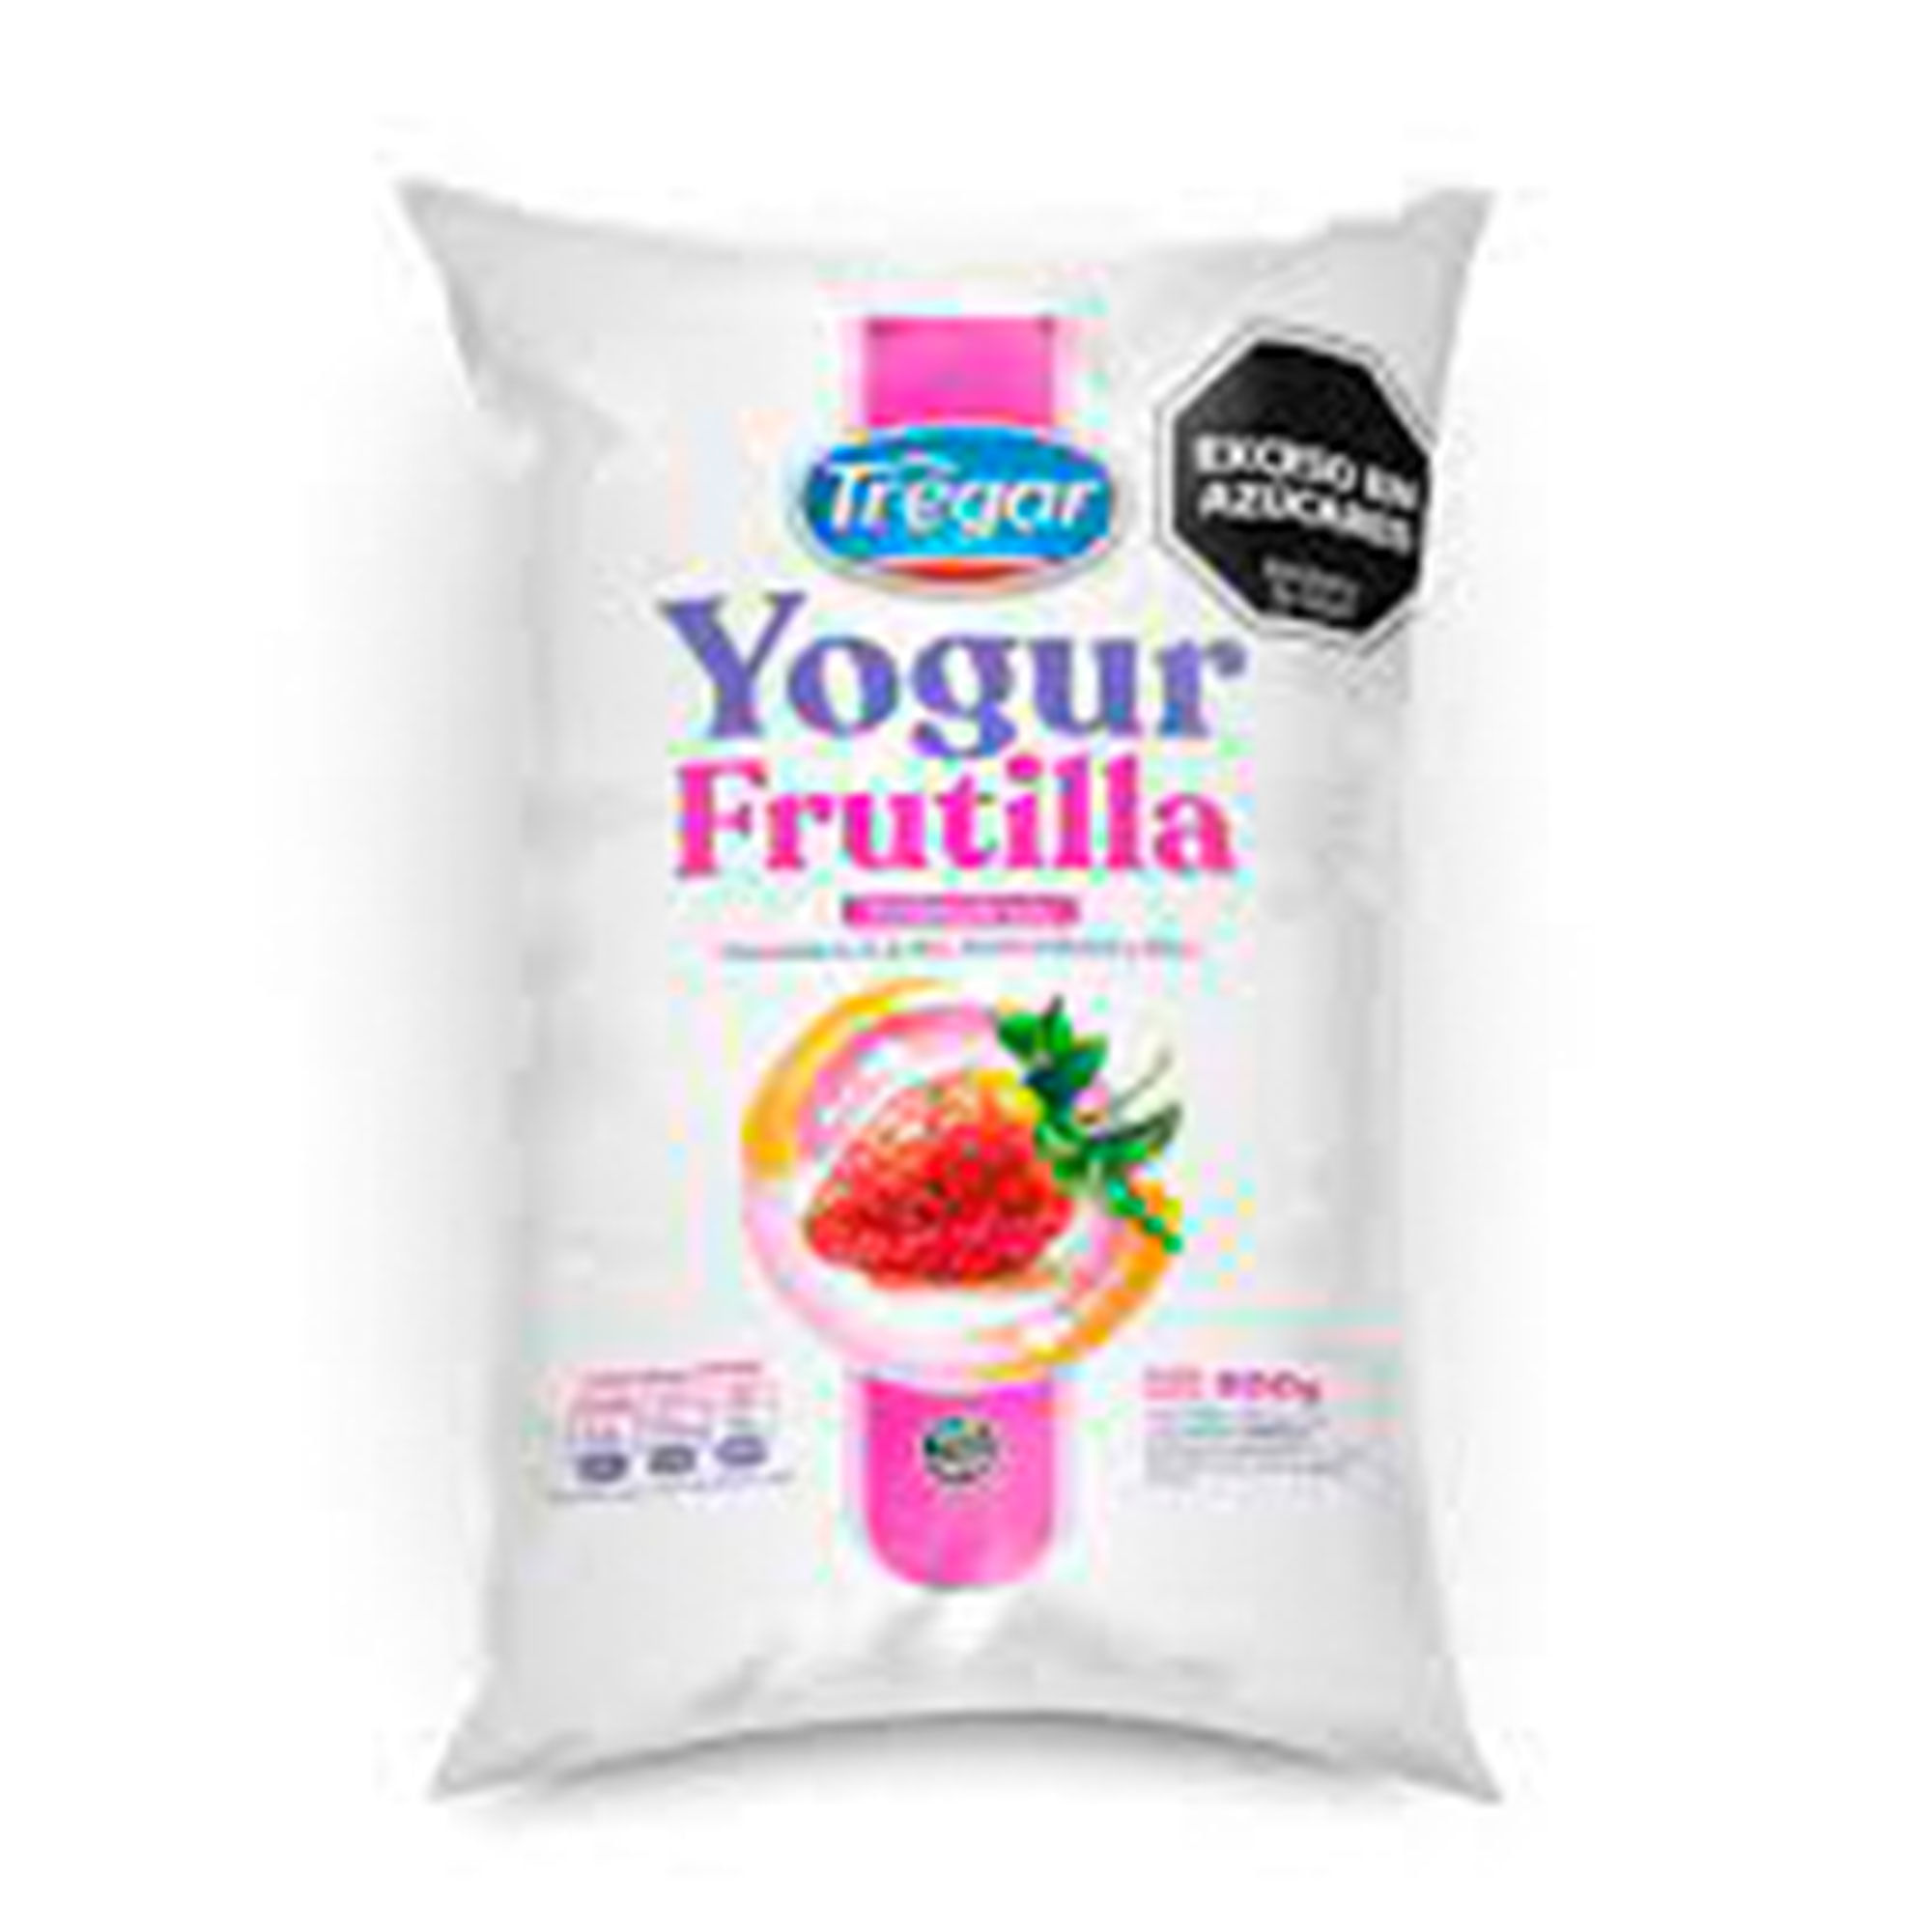 Yogur Bebible Parcialmente Descremado Sabor Frutilla - Cremigal